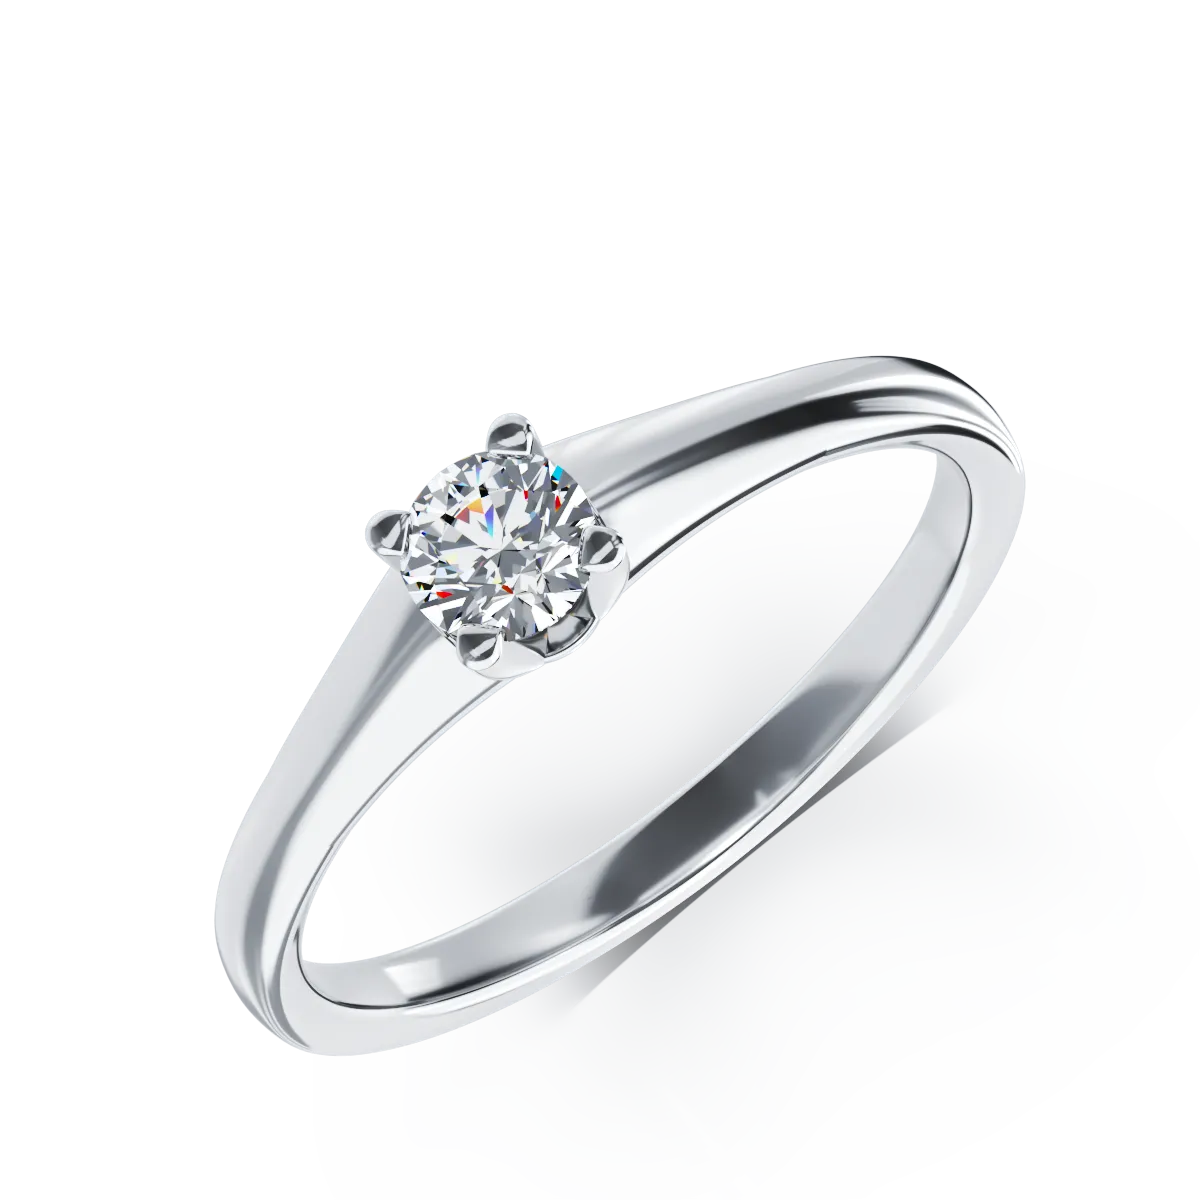 Inel de logodna din aur alb de 18K cu un diamant solitaire de 0.19ct